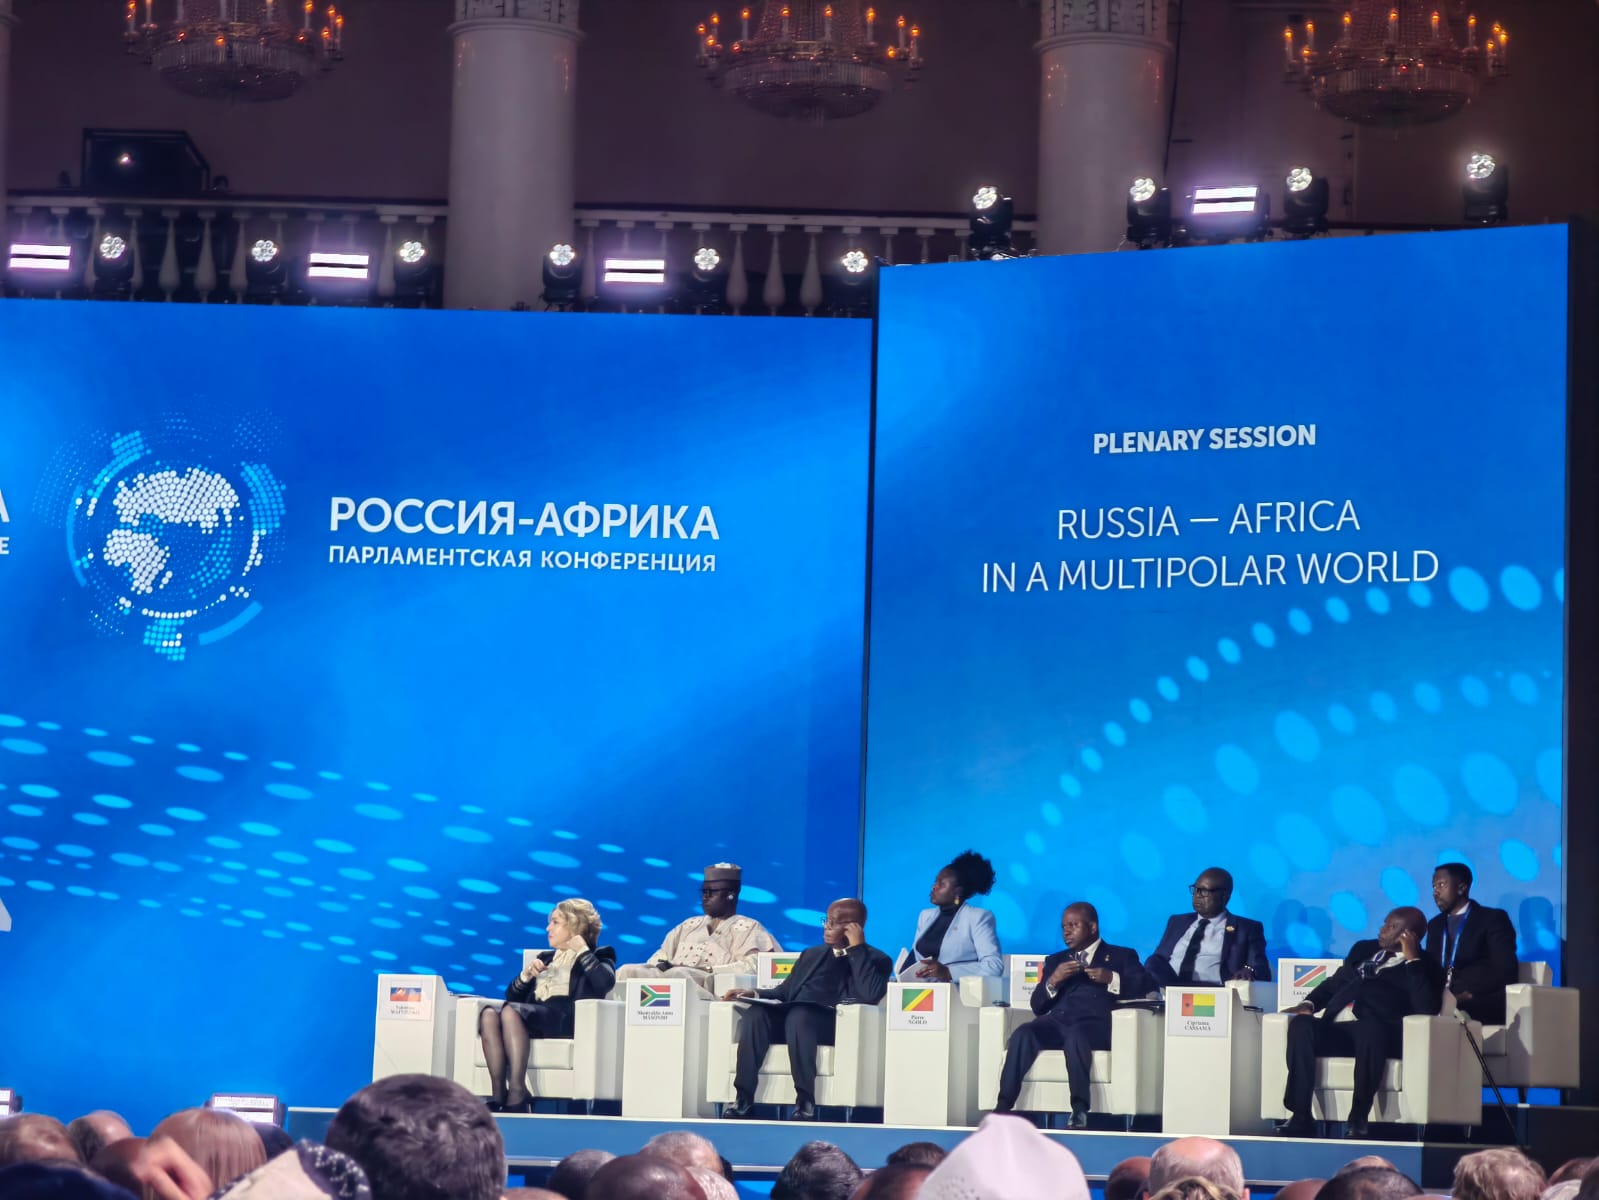 Voici le programme de la 2è conférence parlementaire Russie-Afrique